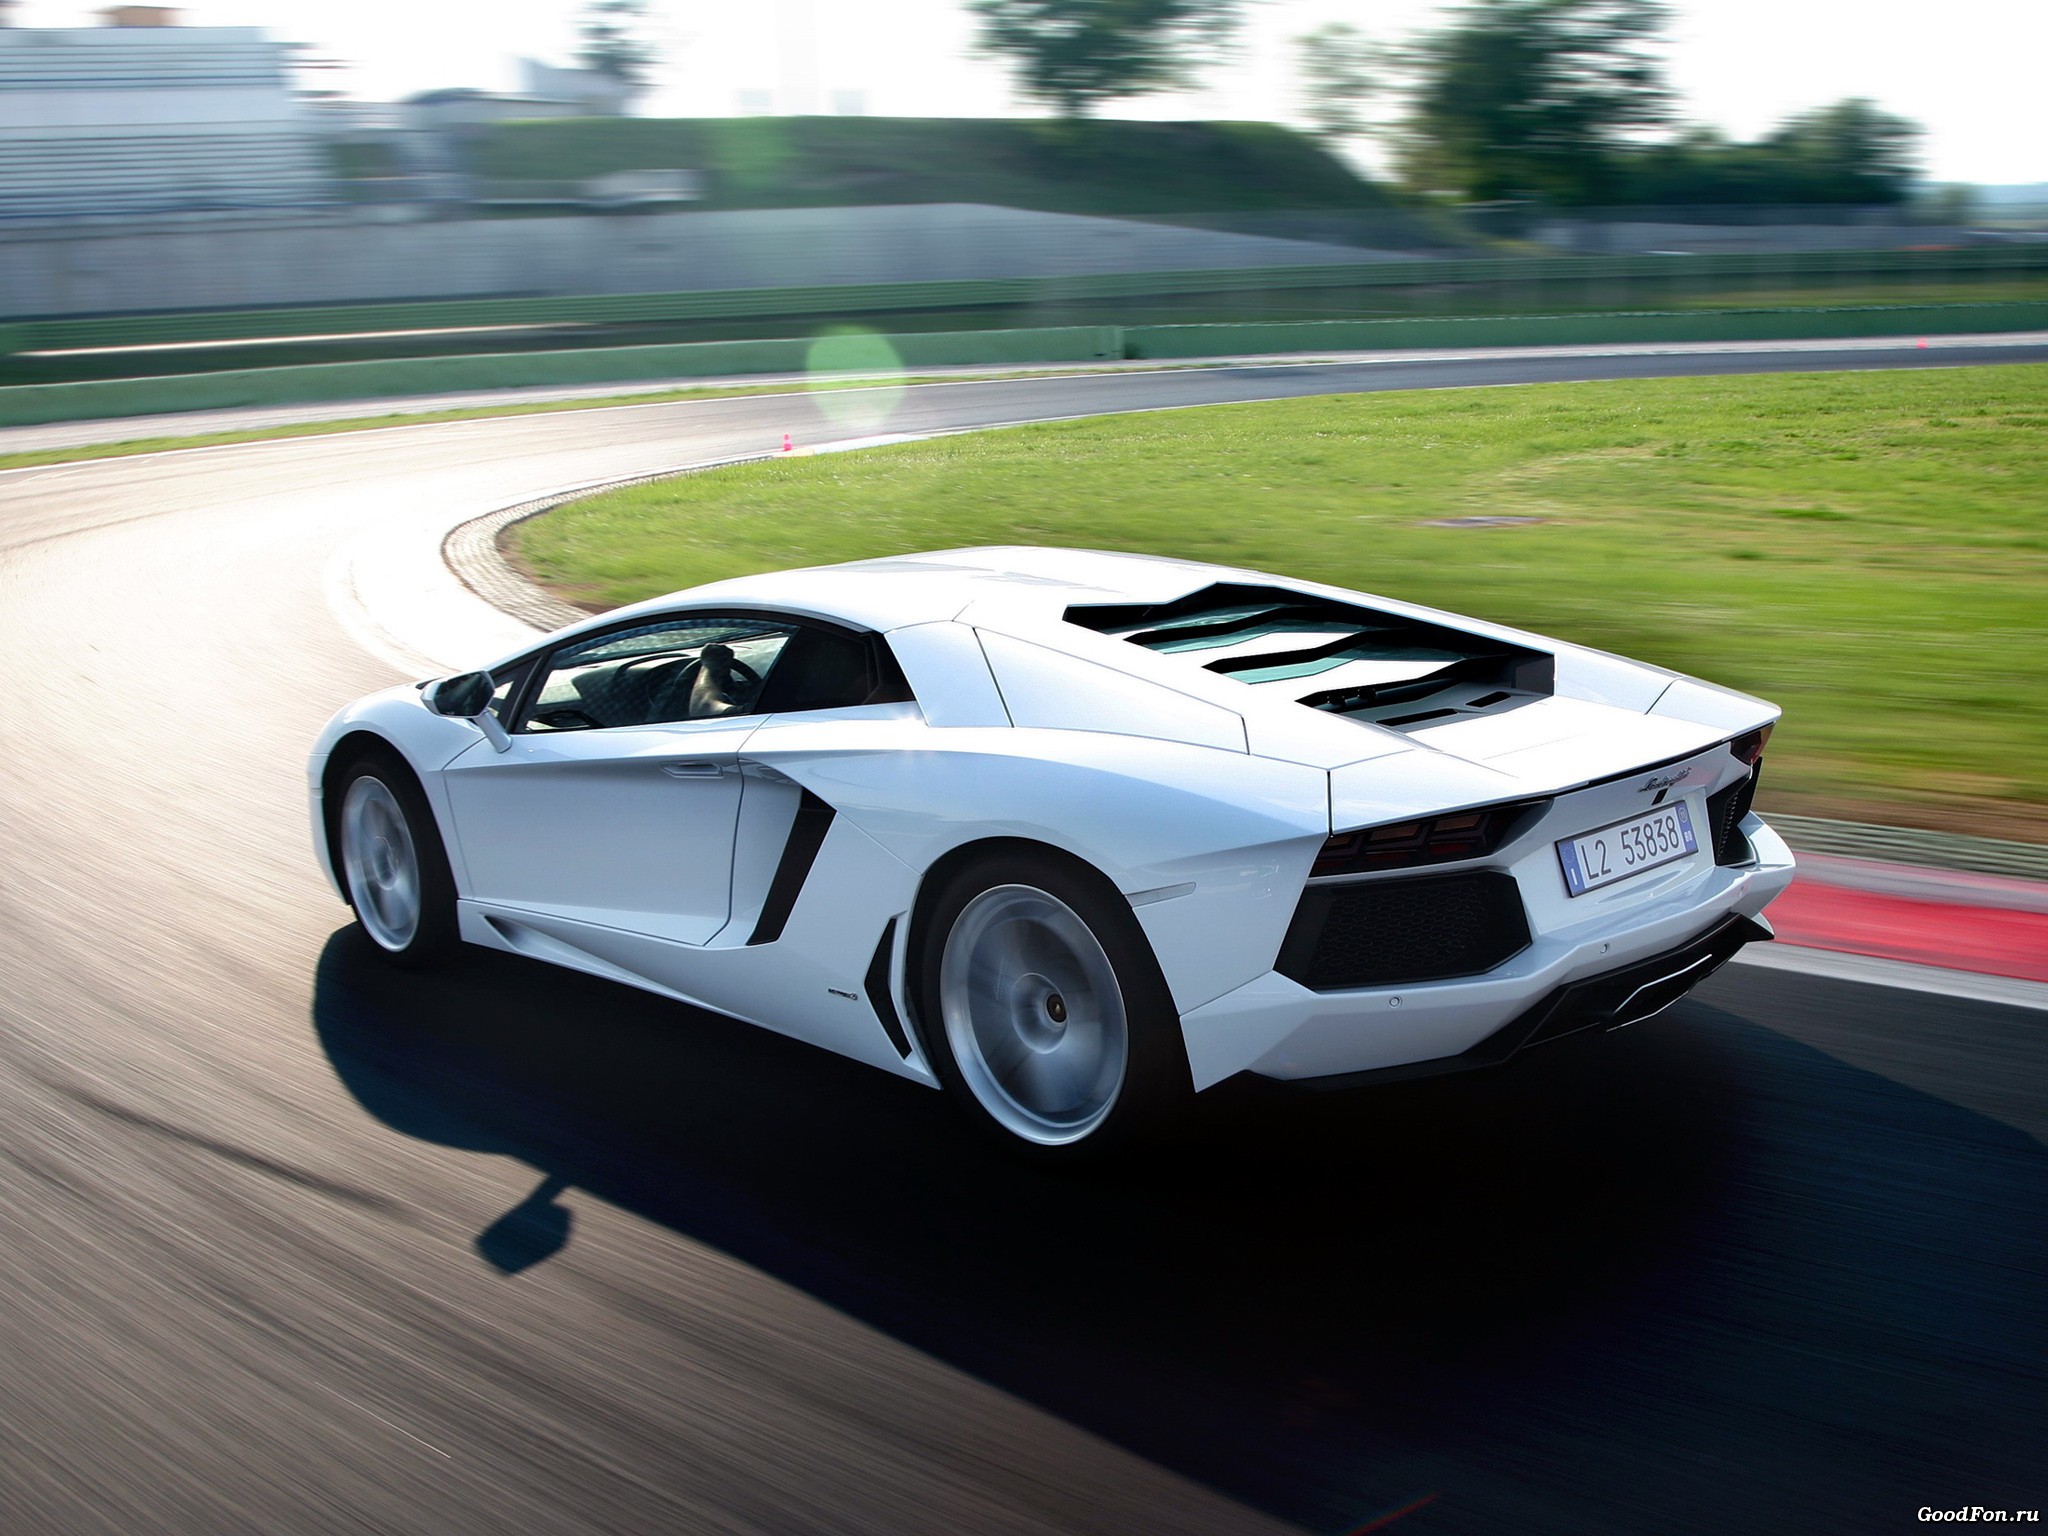 cars, Lamborghini, Italian, Supercars, Racing, Race, Tracks Wallpaper